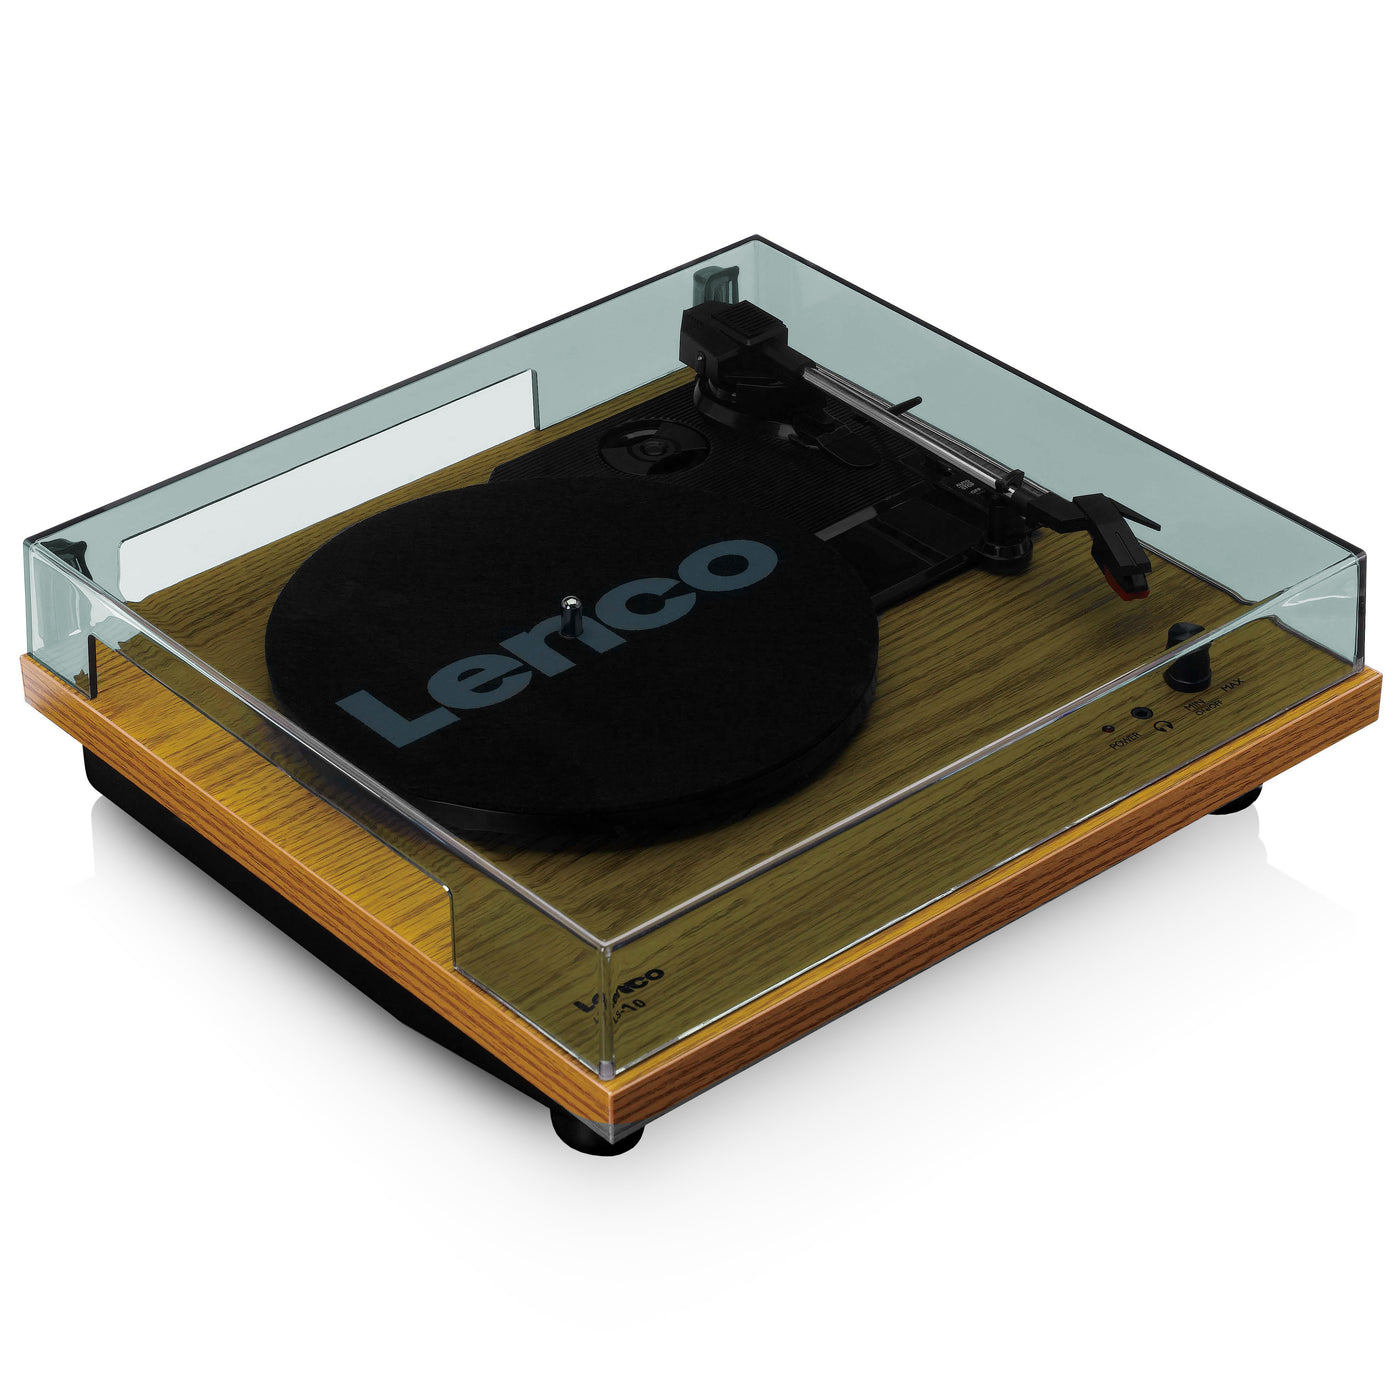 Lenco LS-10WD - Platine avec haut-parleurs intégrés - Bois